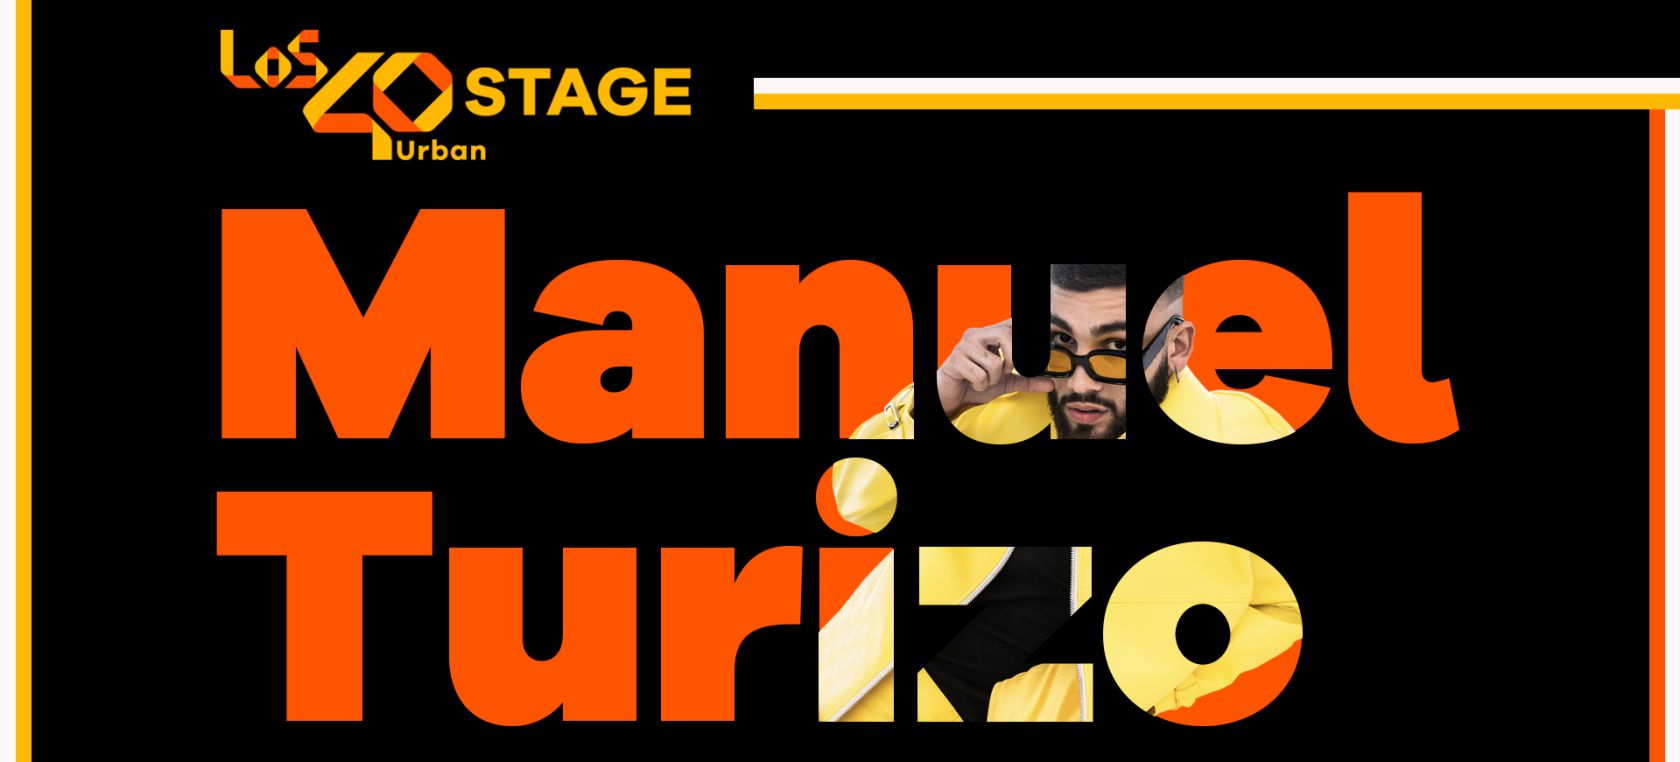 Gana una invitación doble para asistir a LOS40 Urban Stage con Manuel Turizo